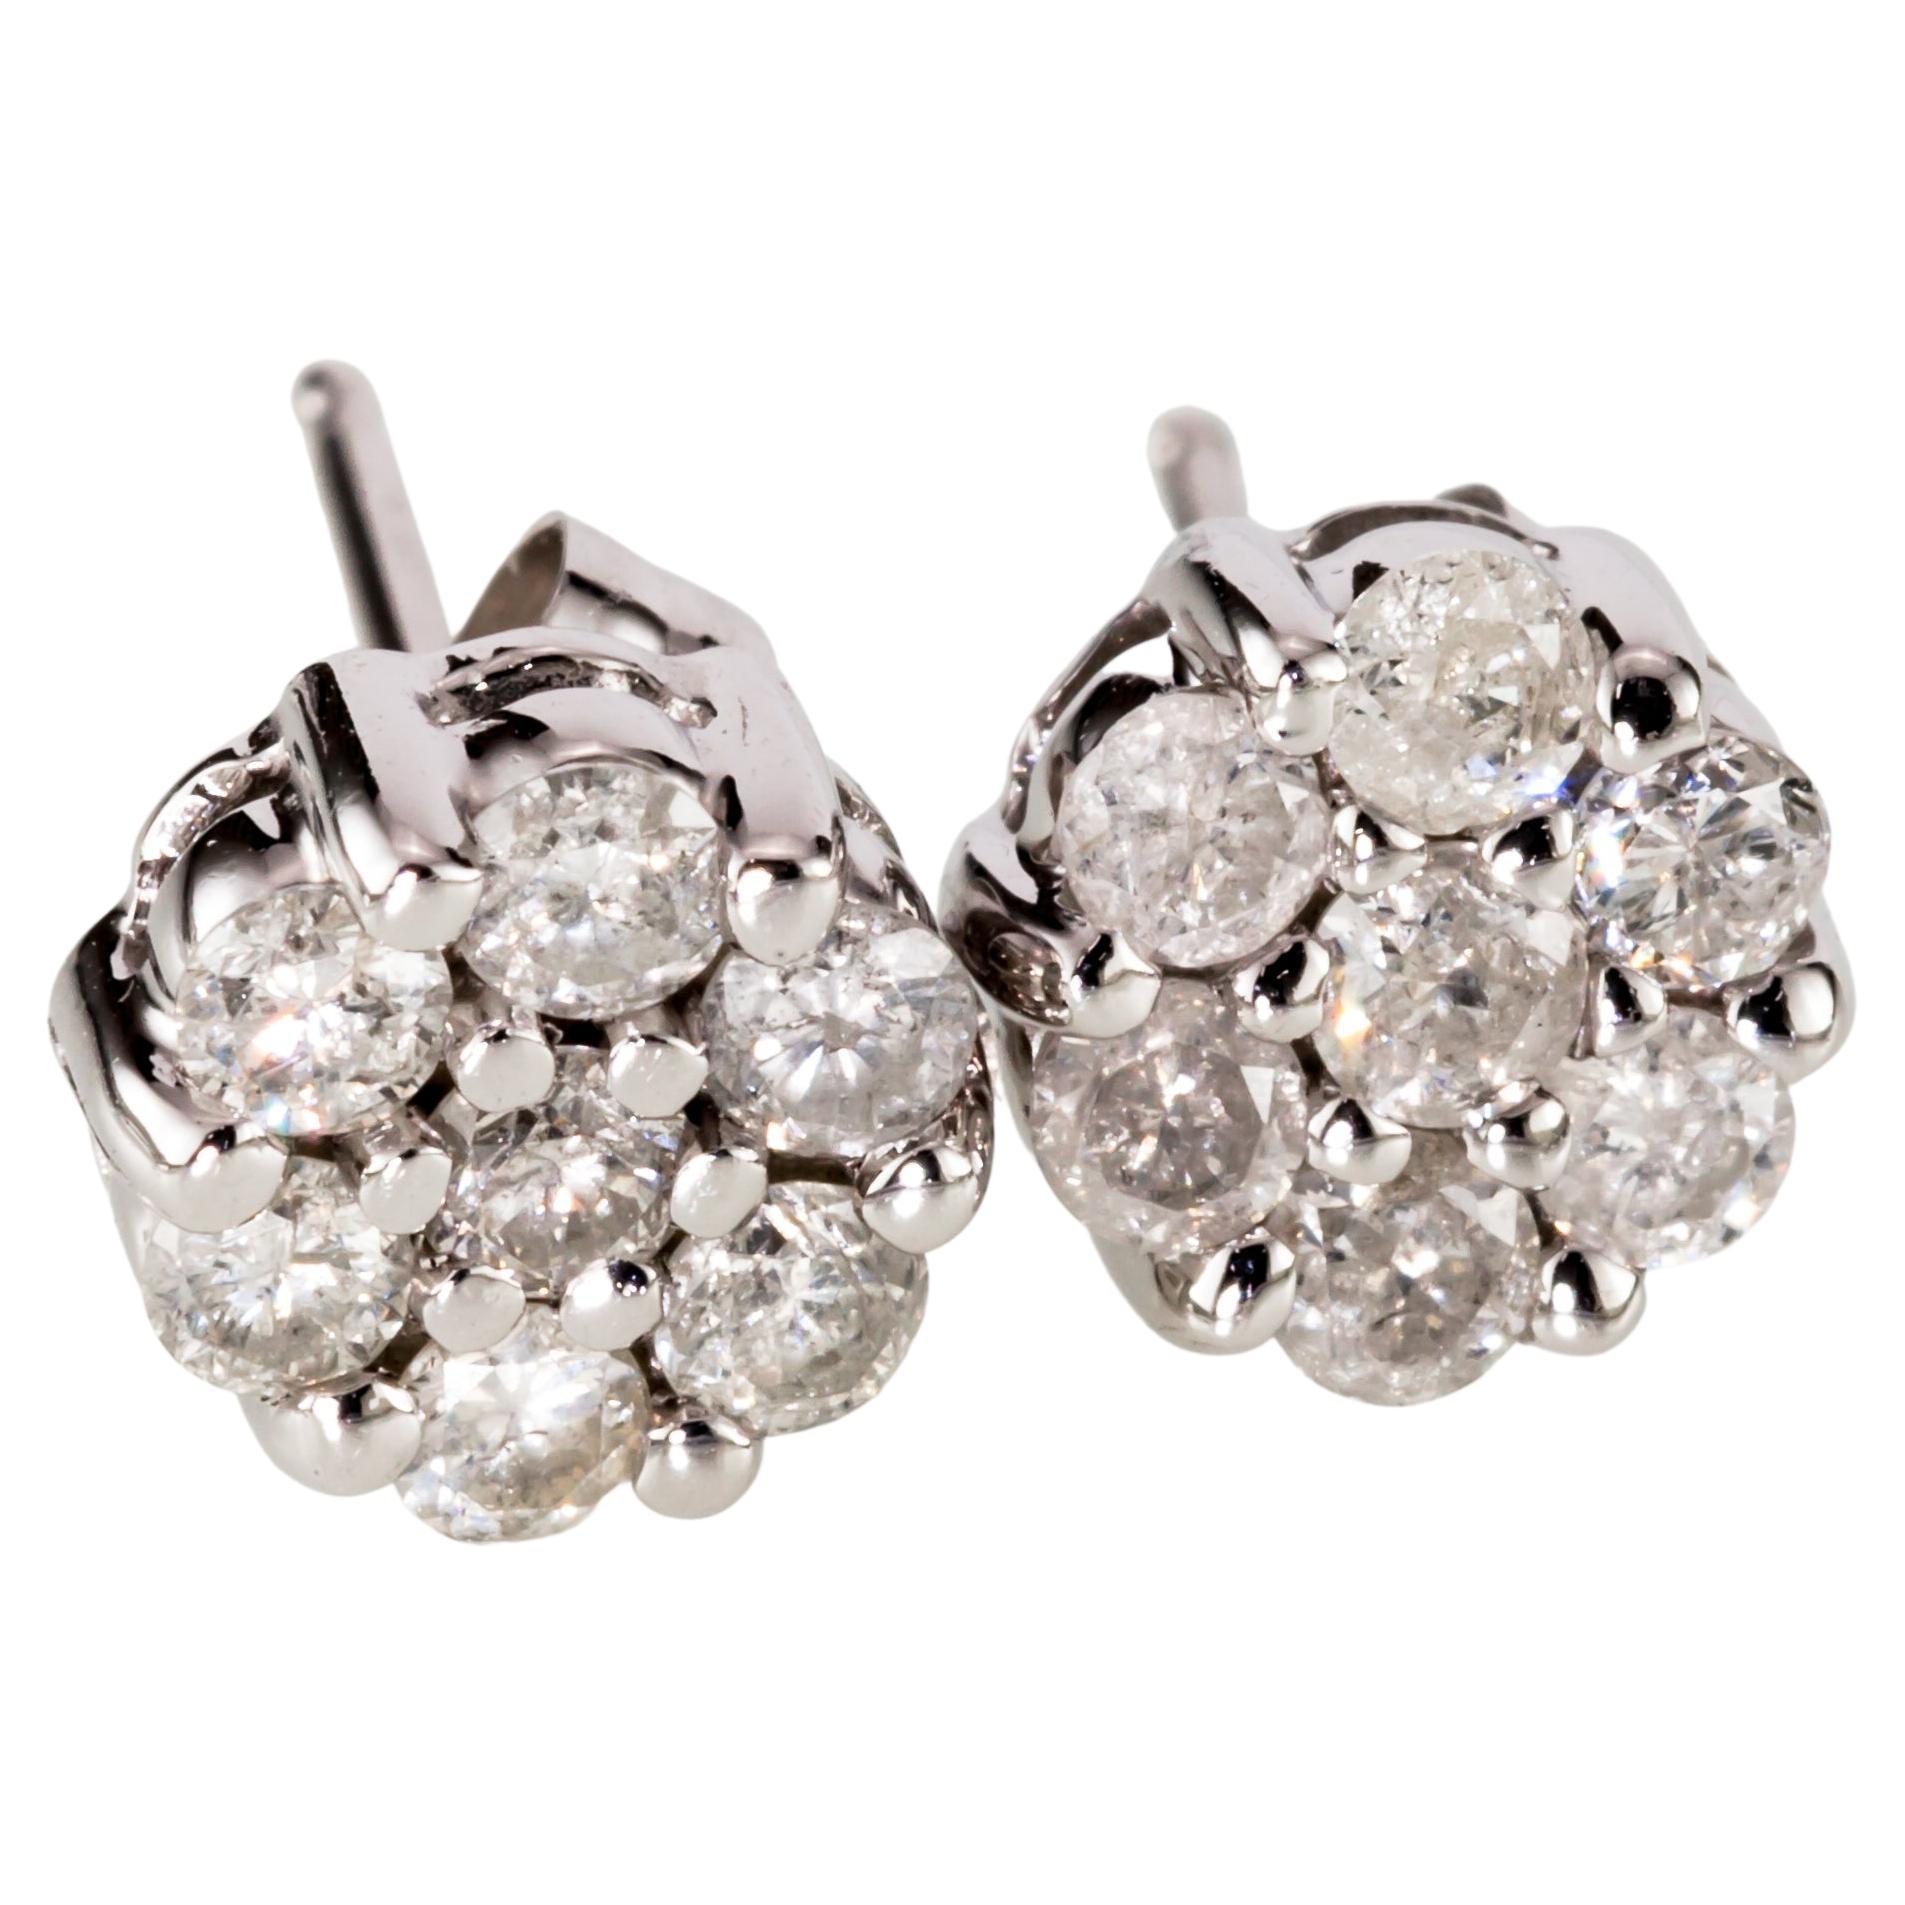 10k White Gold Diamond Floret Stud Earrings W/ Butterfly Backs, Apx. 0.56 Carat For Sale